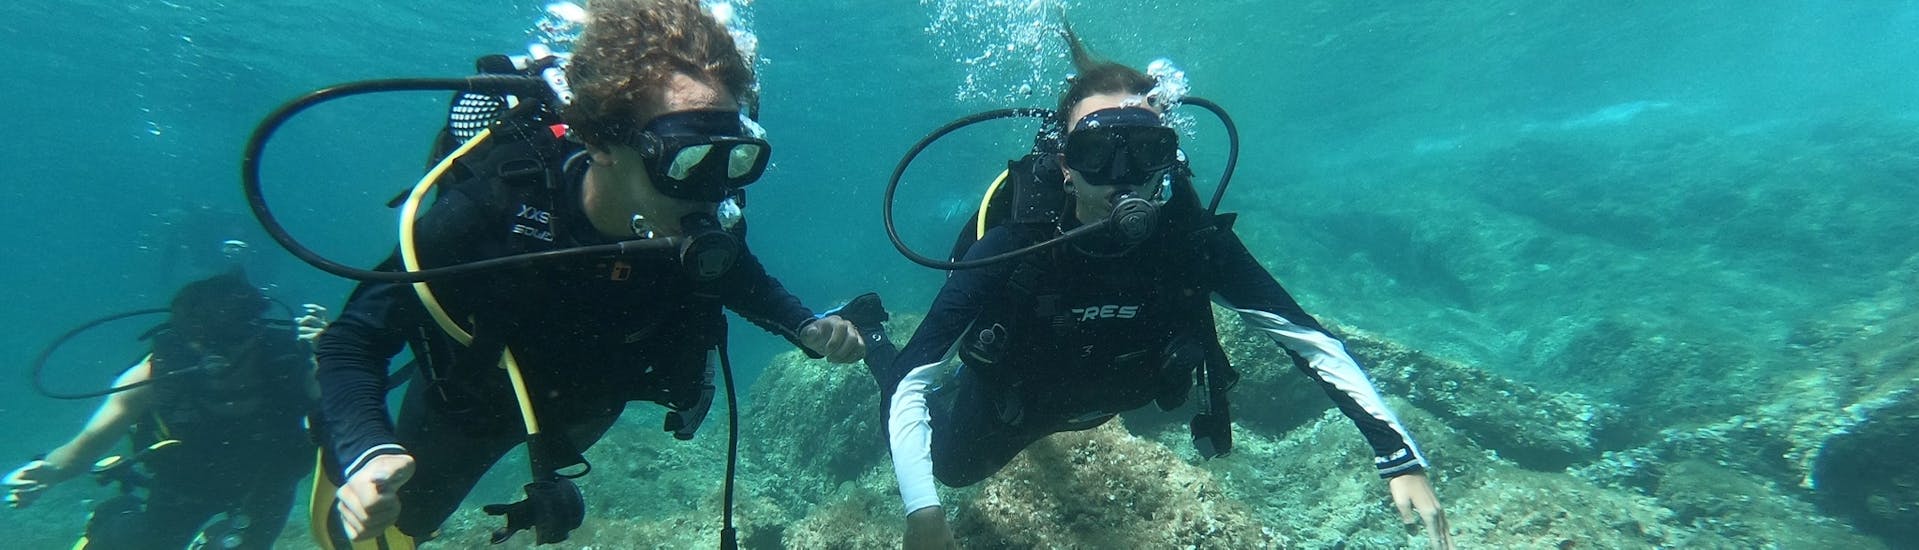 Twee vrienden duiken in de blauwe wateren van Mallorca tijdens een PADI Discover Scuba Diving-cursus met Albatros Diving in Cala Bona.